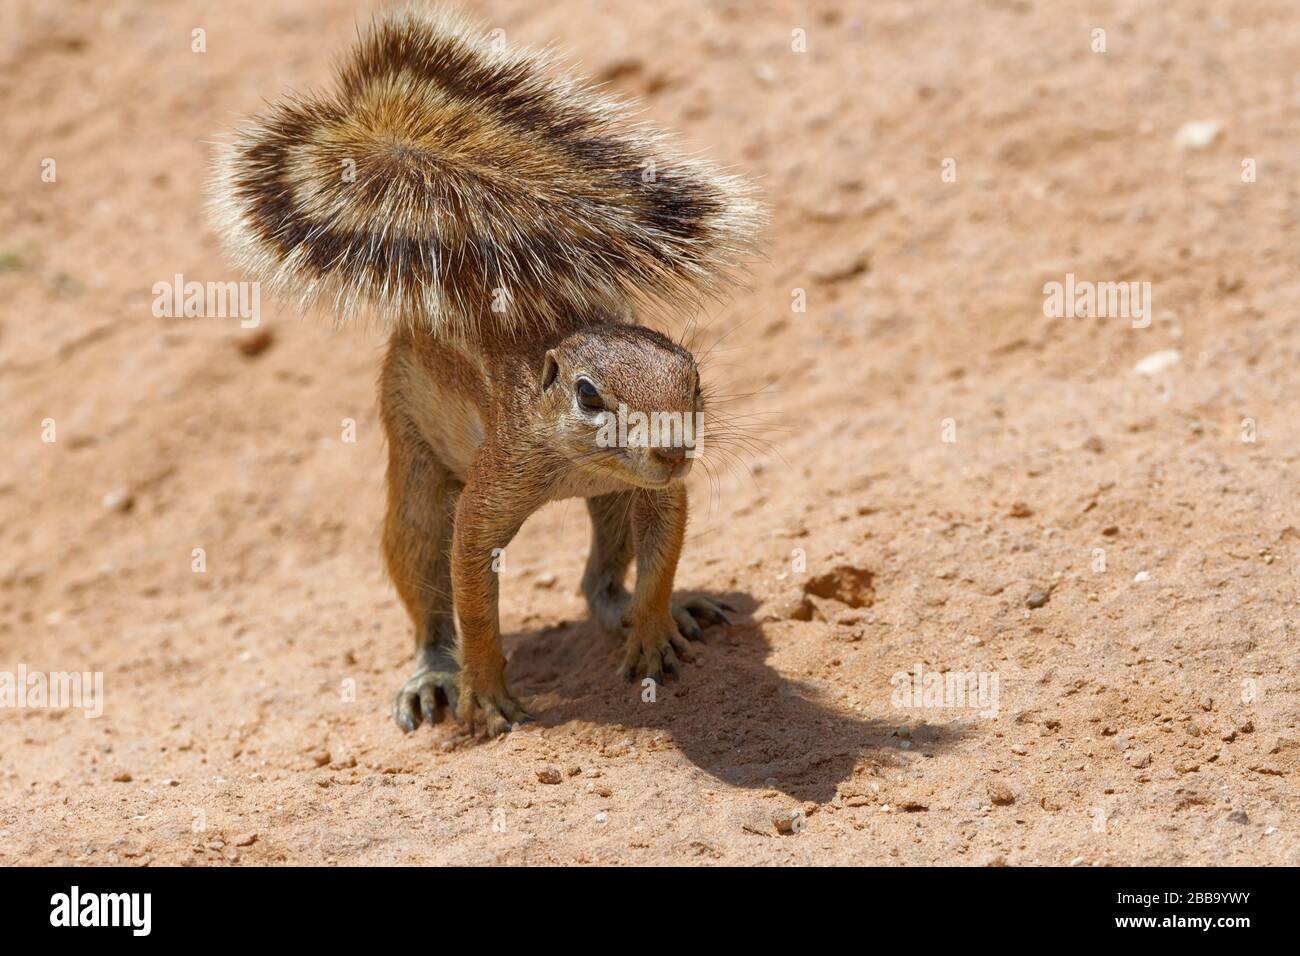 L'écureuil terrestre du Cap (xerus inaouris), sur tous les cours, Alert, Kgalagadi TransFrontier Park, Northern Cape, Afrique du Sud, Afrique Banque D'Images